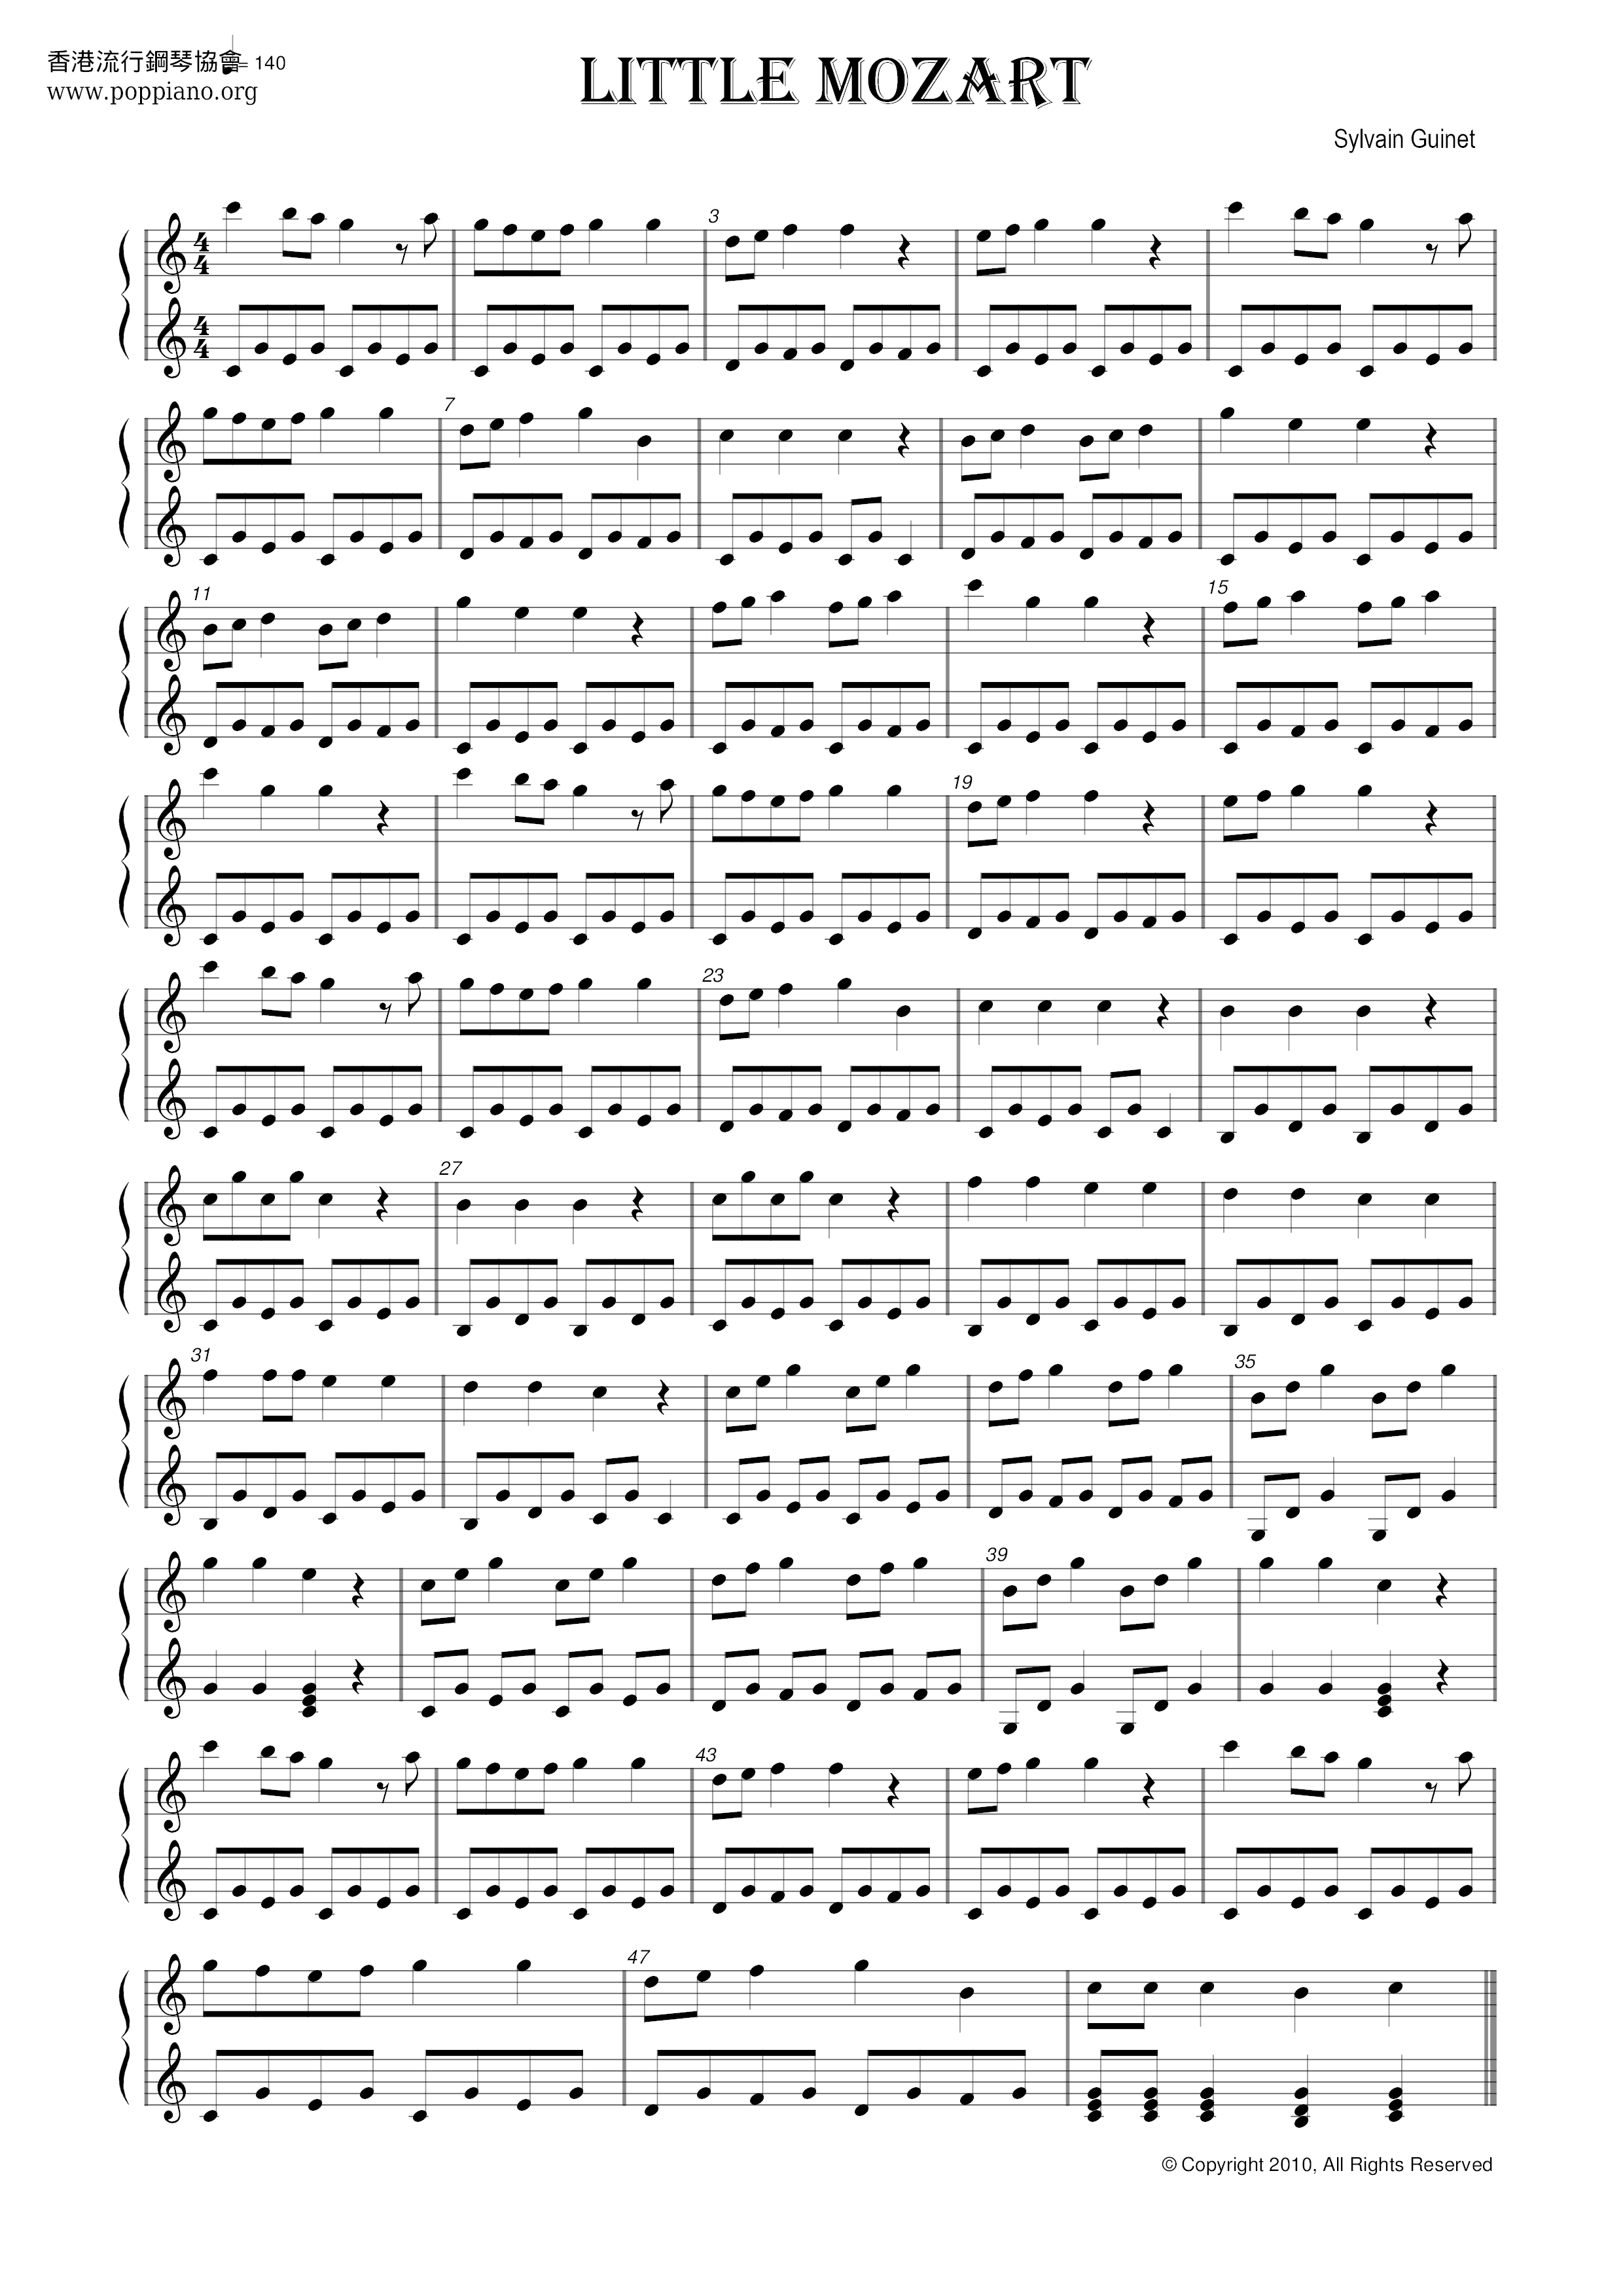 Little Mozart Score